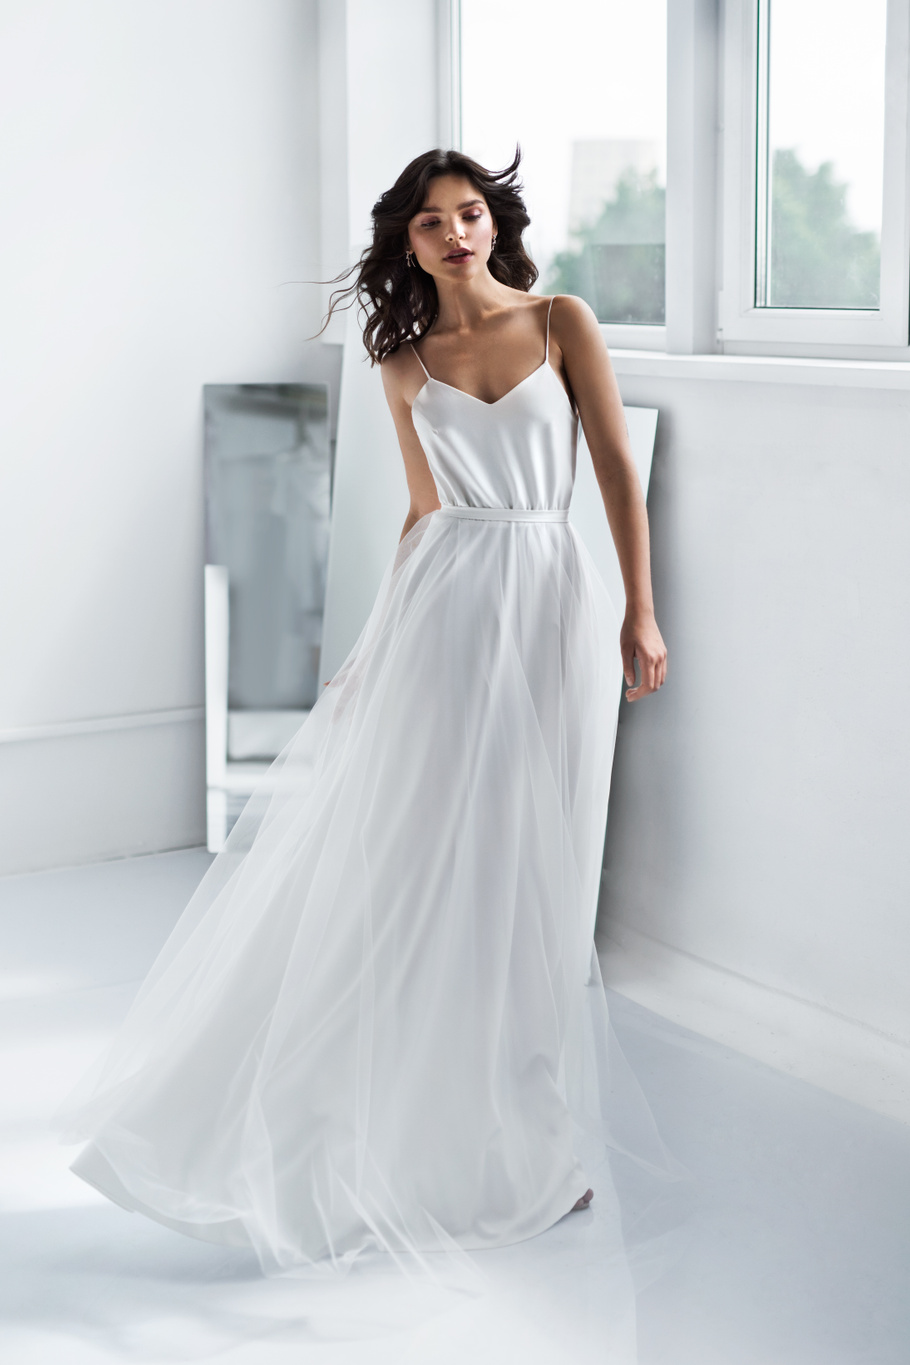 Купить свадебное платье «Аюна» Юнона из коллекции 2020 года в салоне «Мэри Трюфель»